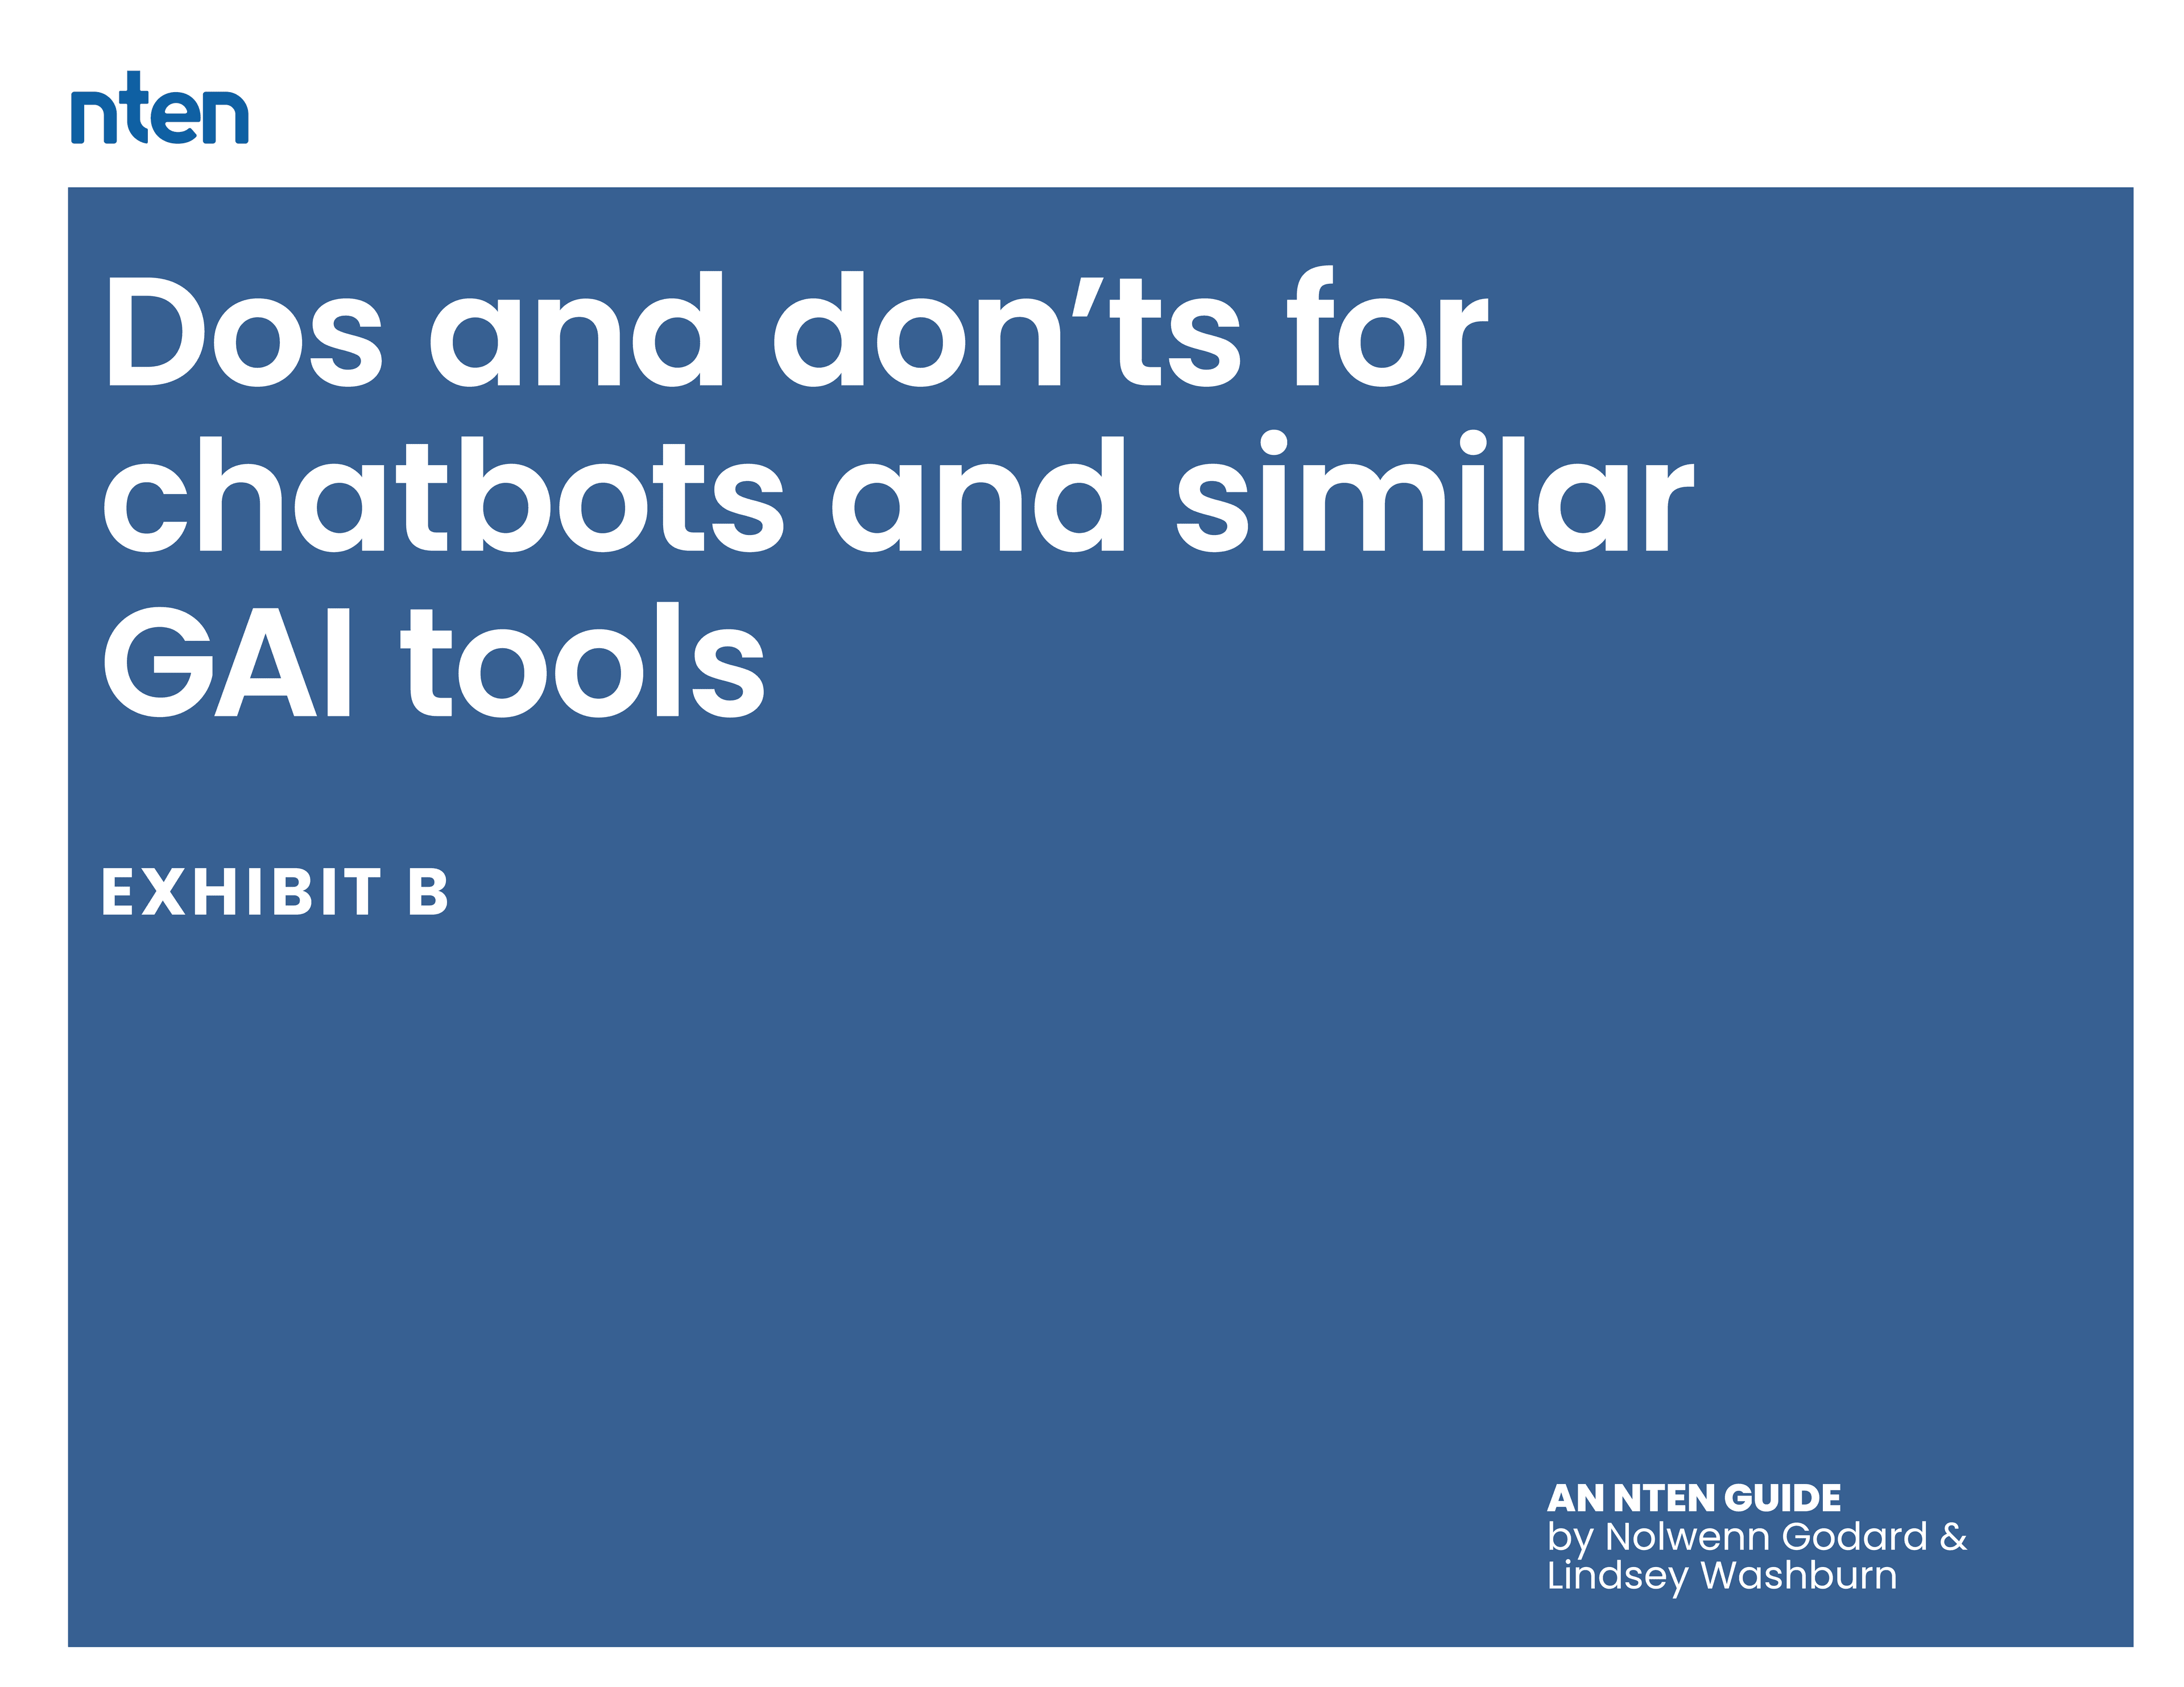 Dos and don'ts for chatbots and similar GAI tools